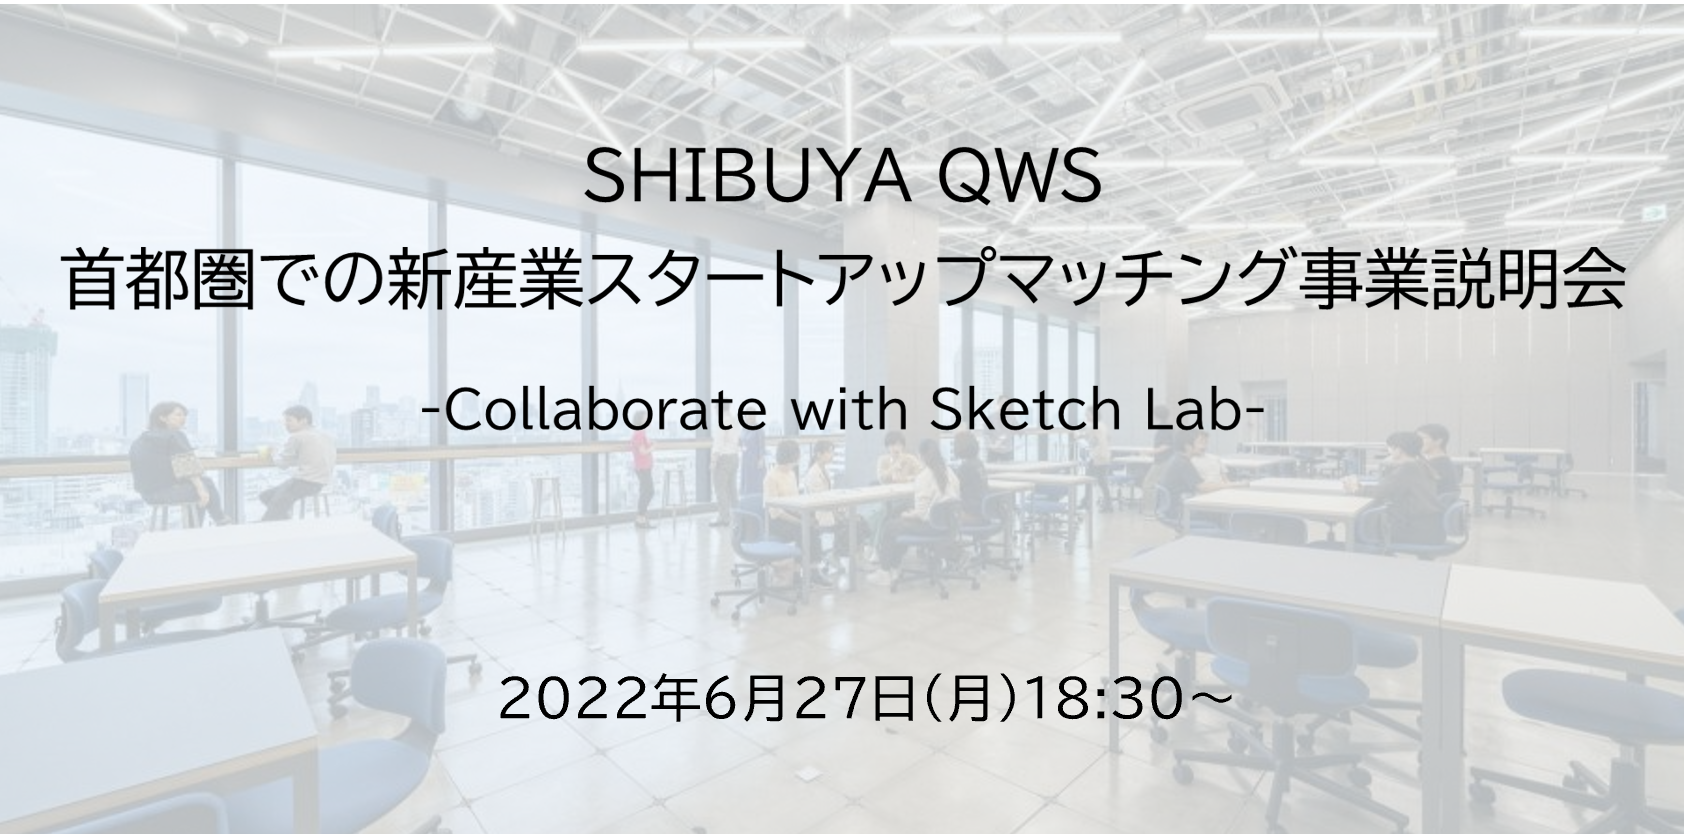 【開催済み】「SHIBUYA QWS(渋谷キューズ)」首都圏での新産業スタートアップマッチング事業説明会